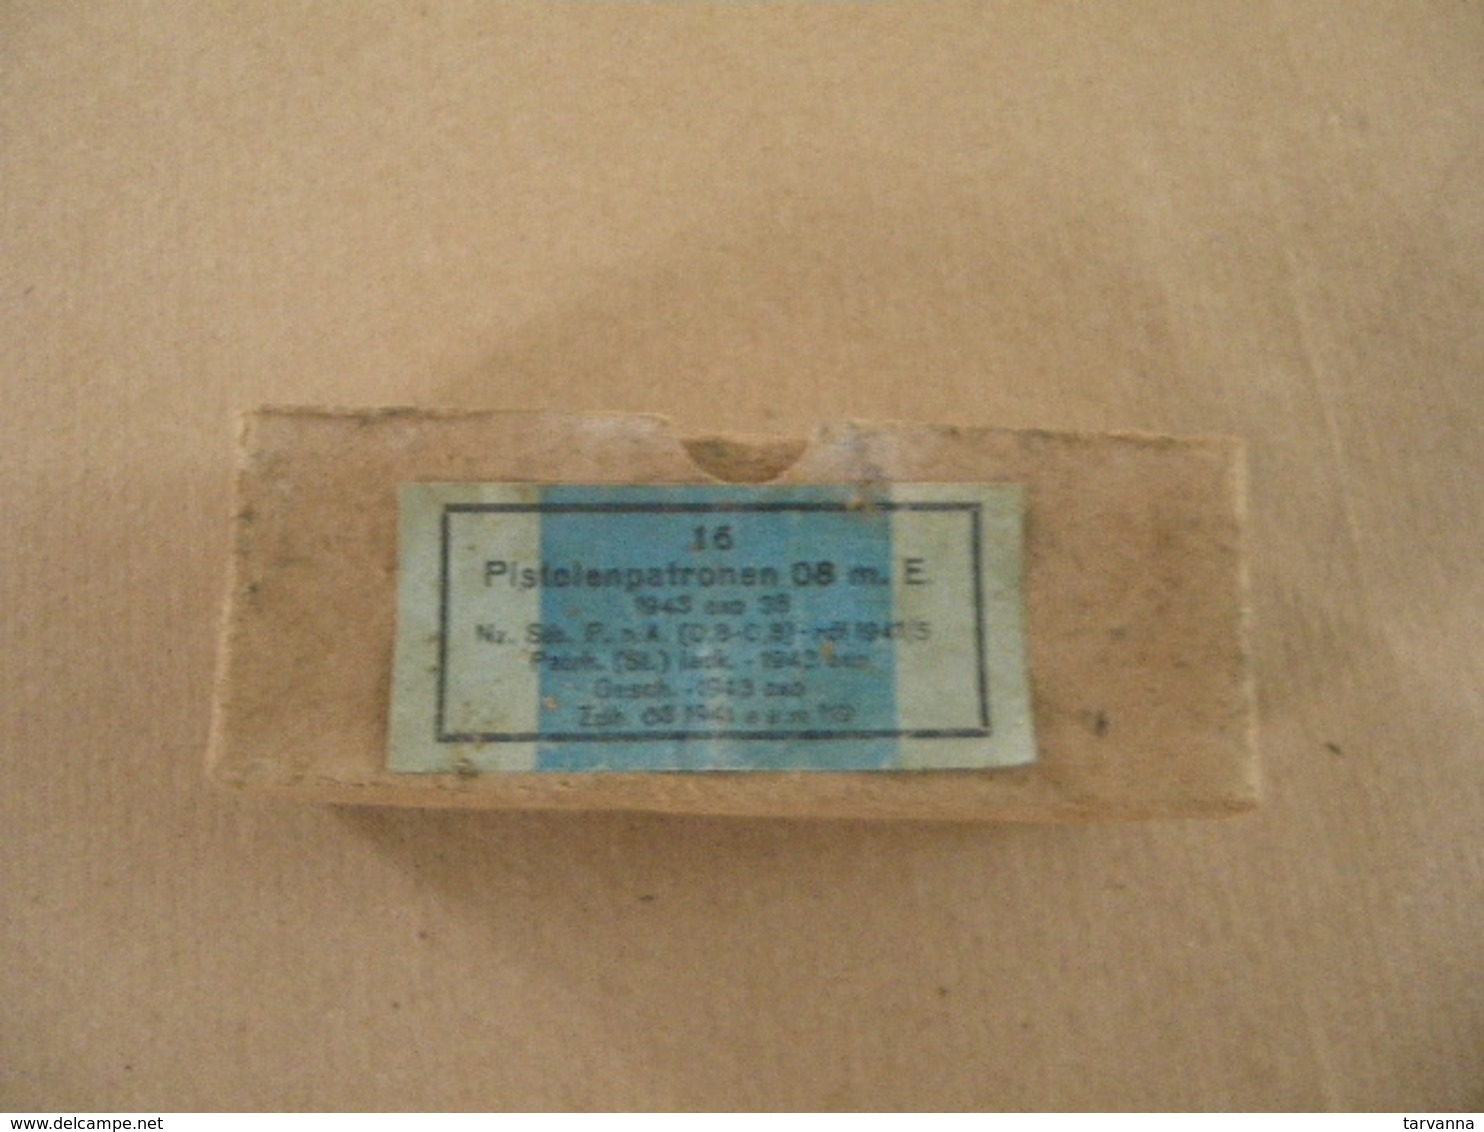 Boîte En Carton De 16 Cartouches Neutralisées Cal 9 Mm Allemande WWII - Equipment